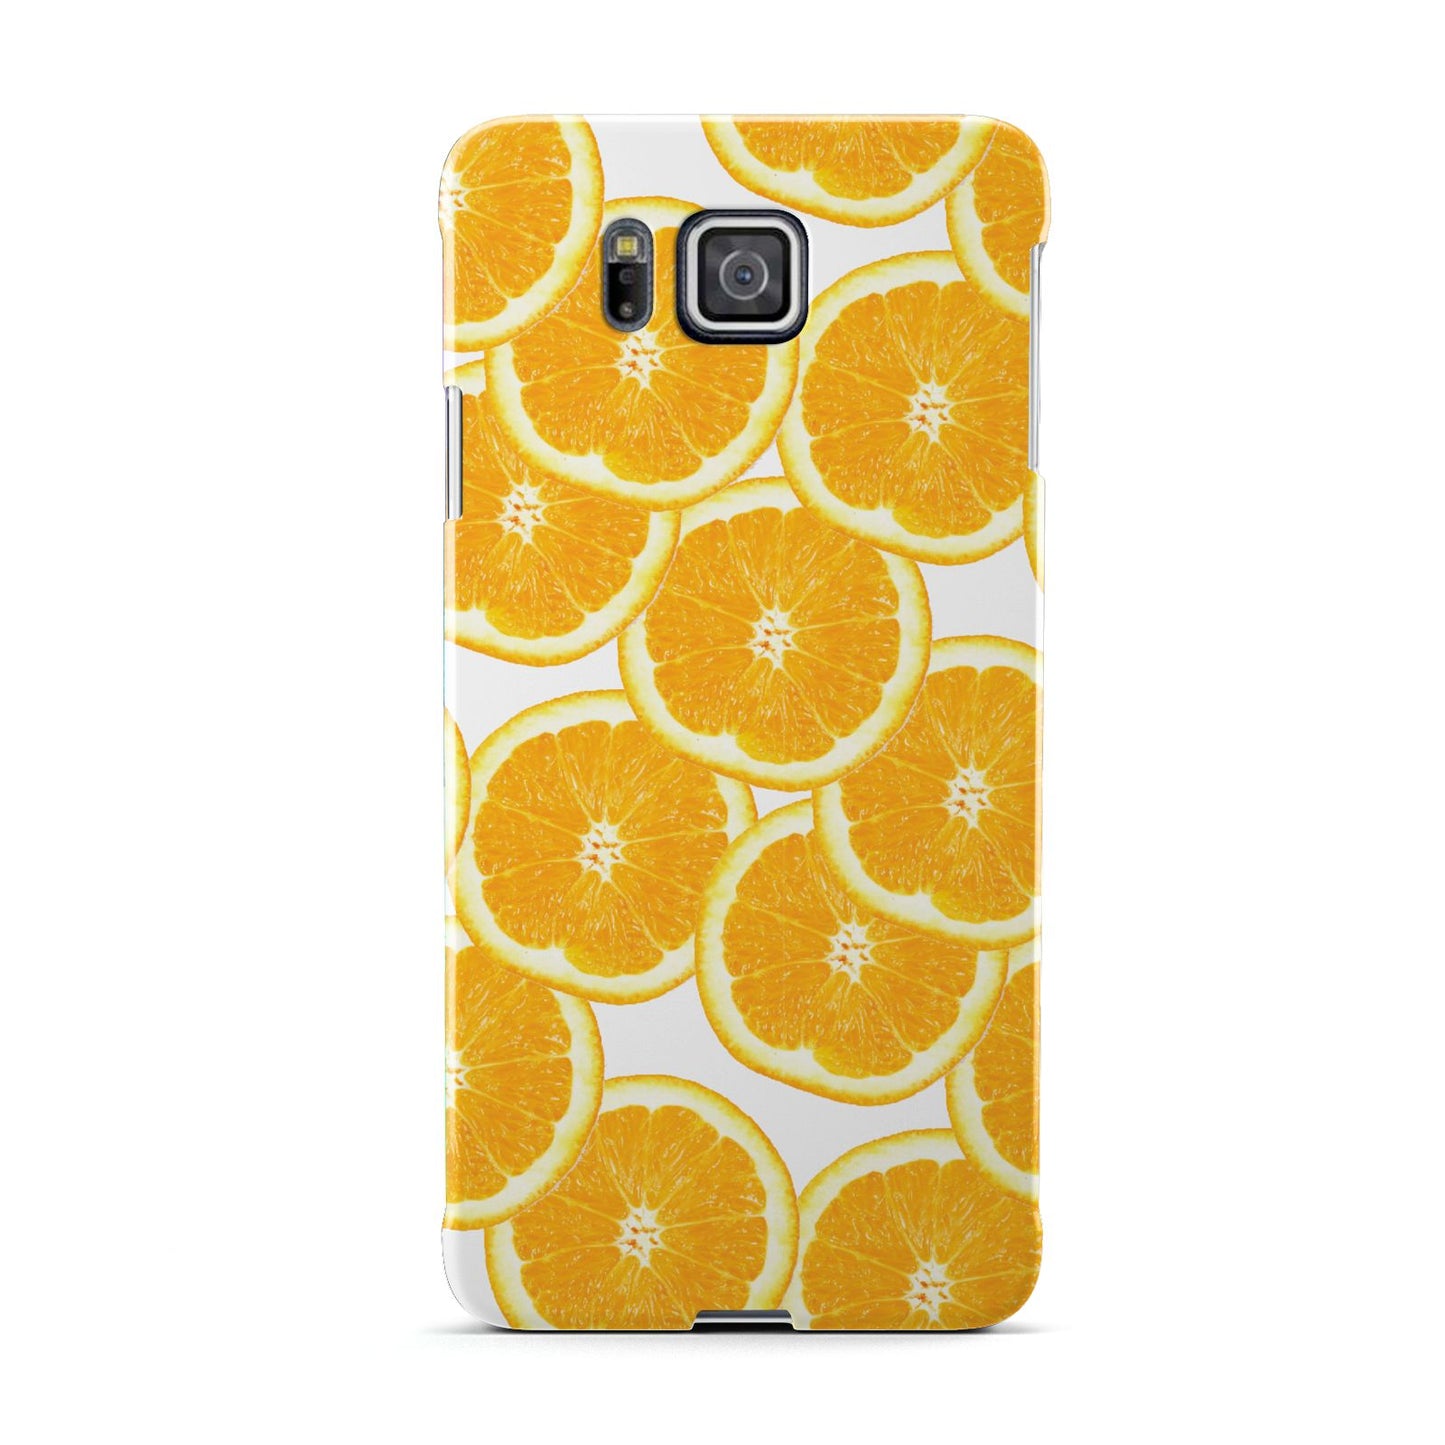 Orange Fruit Slices Samsung Galaxy Alpha Case